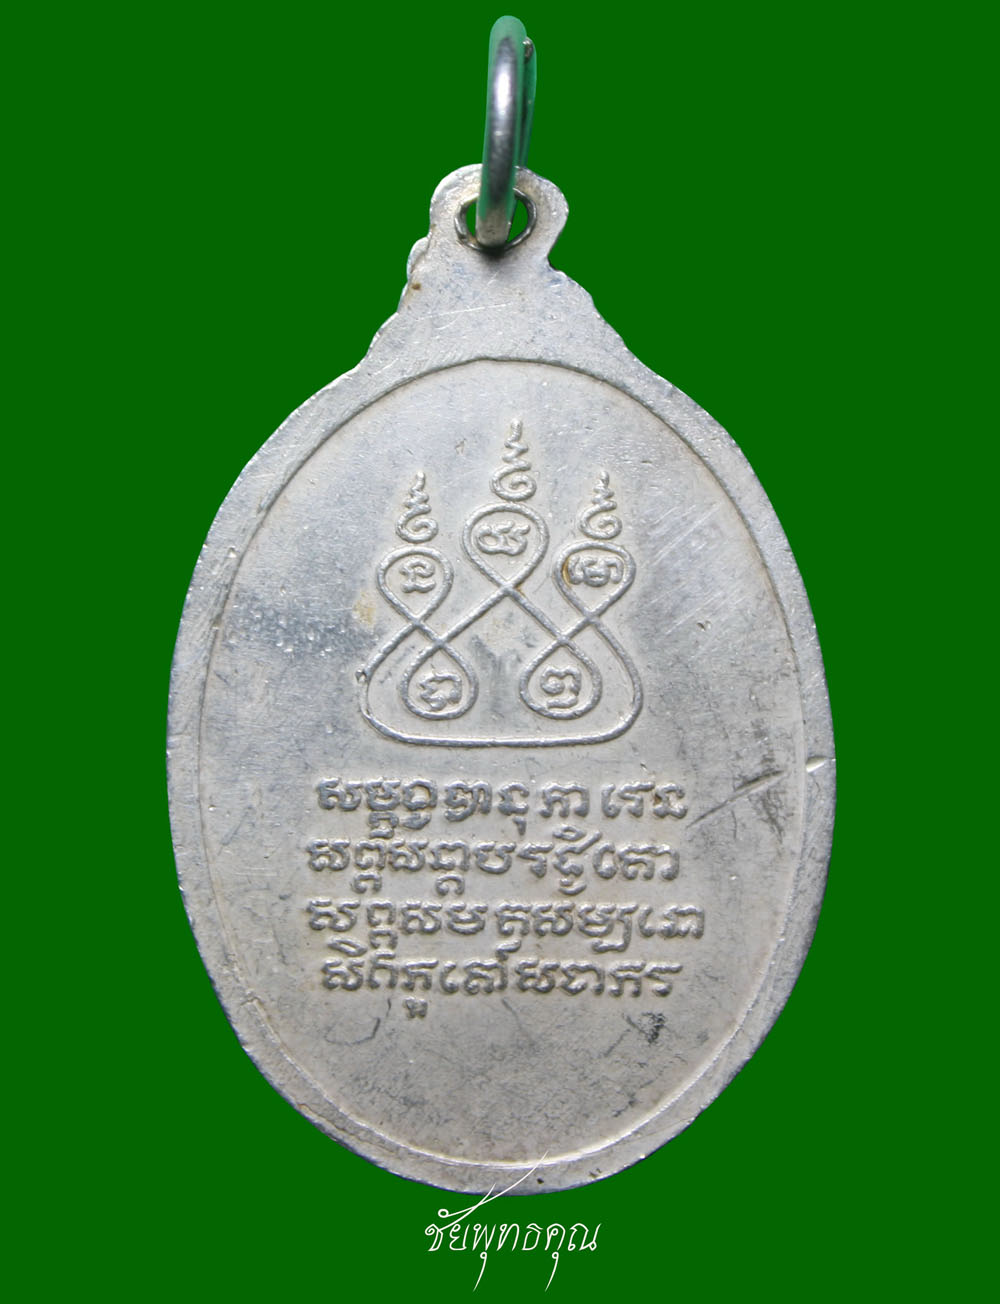 เหรียญครูบาเจ้าศรีวิไชย ปีพ.ศ. 2530 (เนื้อเงิน) เคาะเดียวครับ